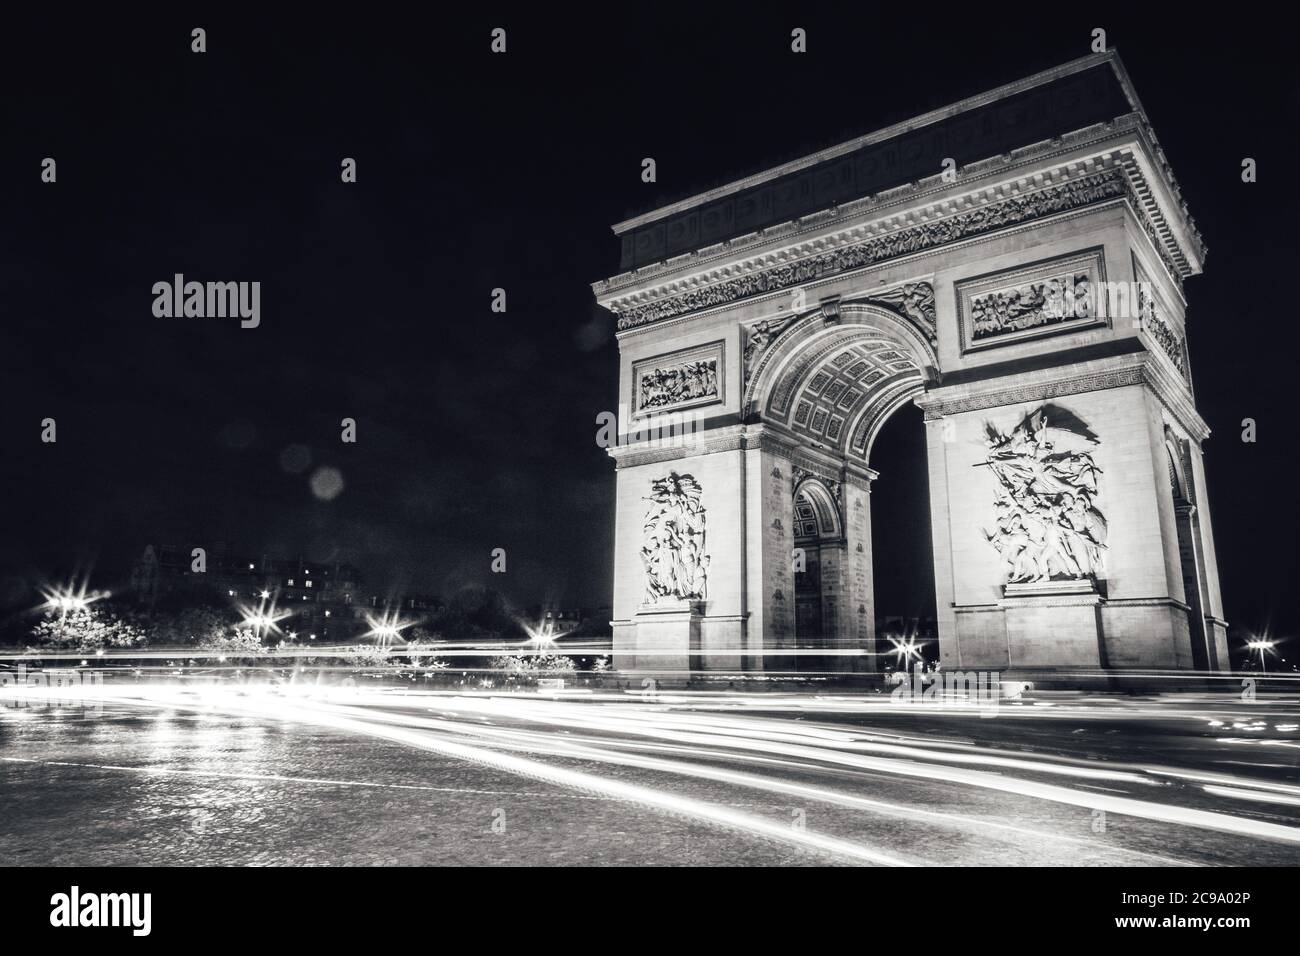 L'Arc de Triomphe de l'étoile est l'un des monuments les plus célèbres de Paris, en France, se tenant à l'extrémité ouest des champs-Élysées.pris la nuit Banque D'Images